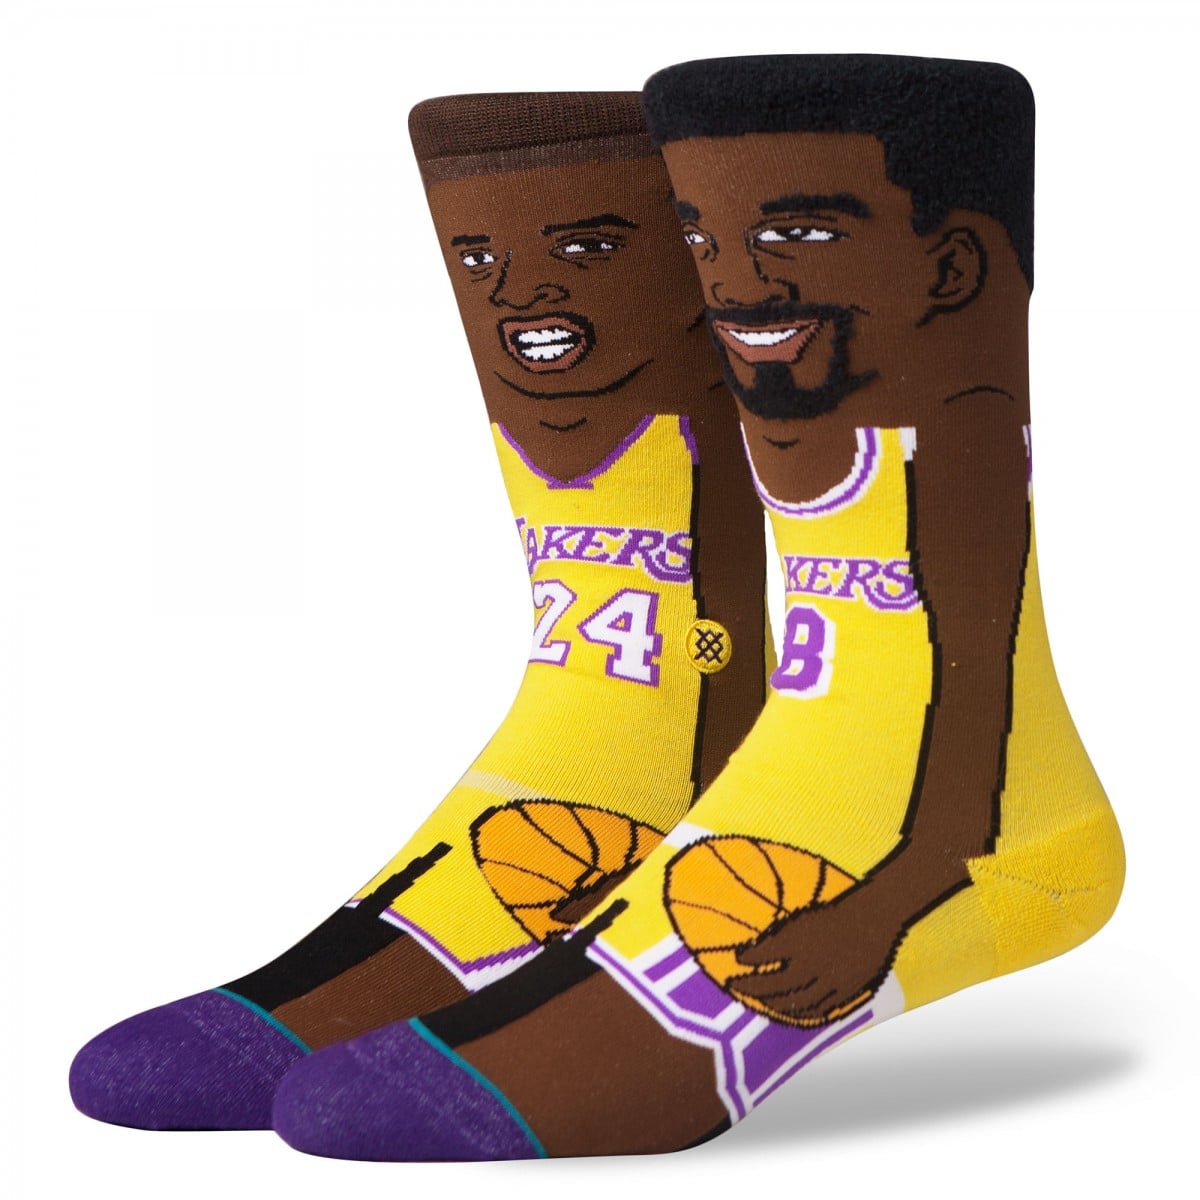 STANCE 襪子 - NBA K. Bryant 卡通款 男襪 - M545B16KBR 1